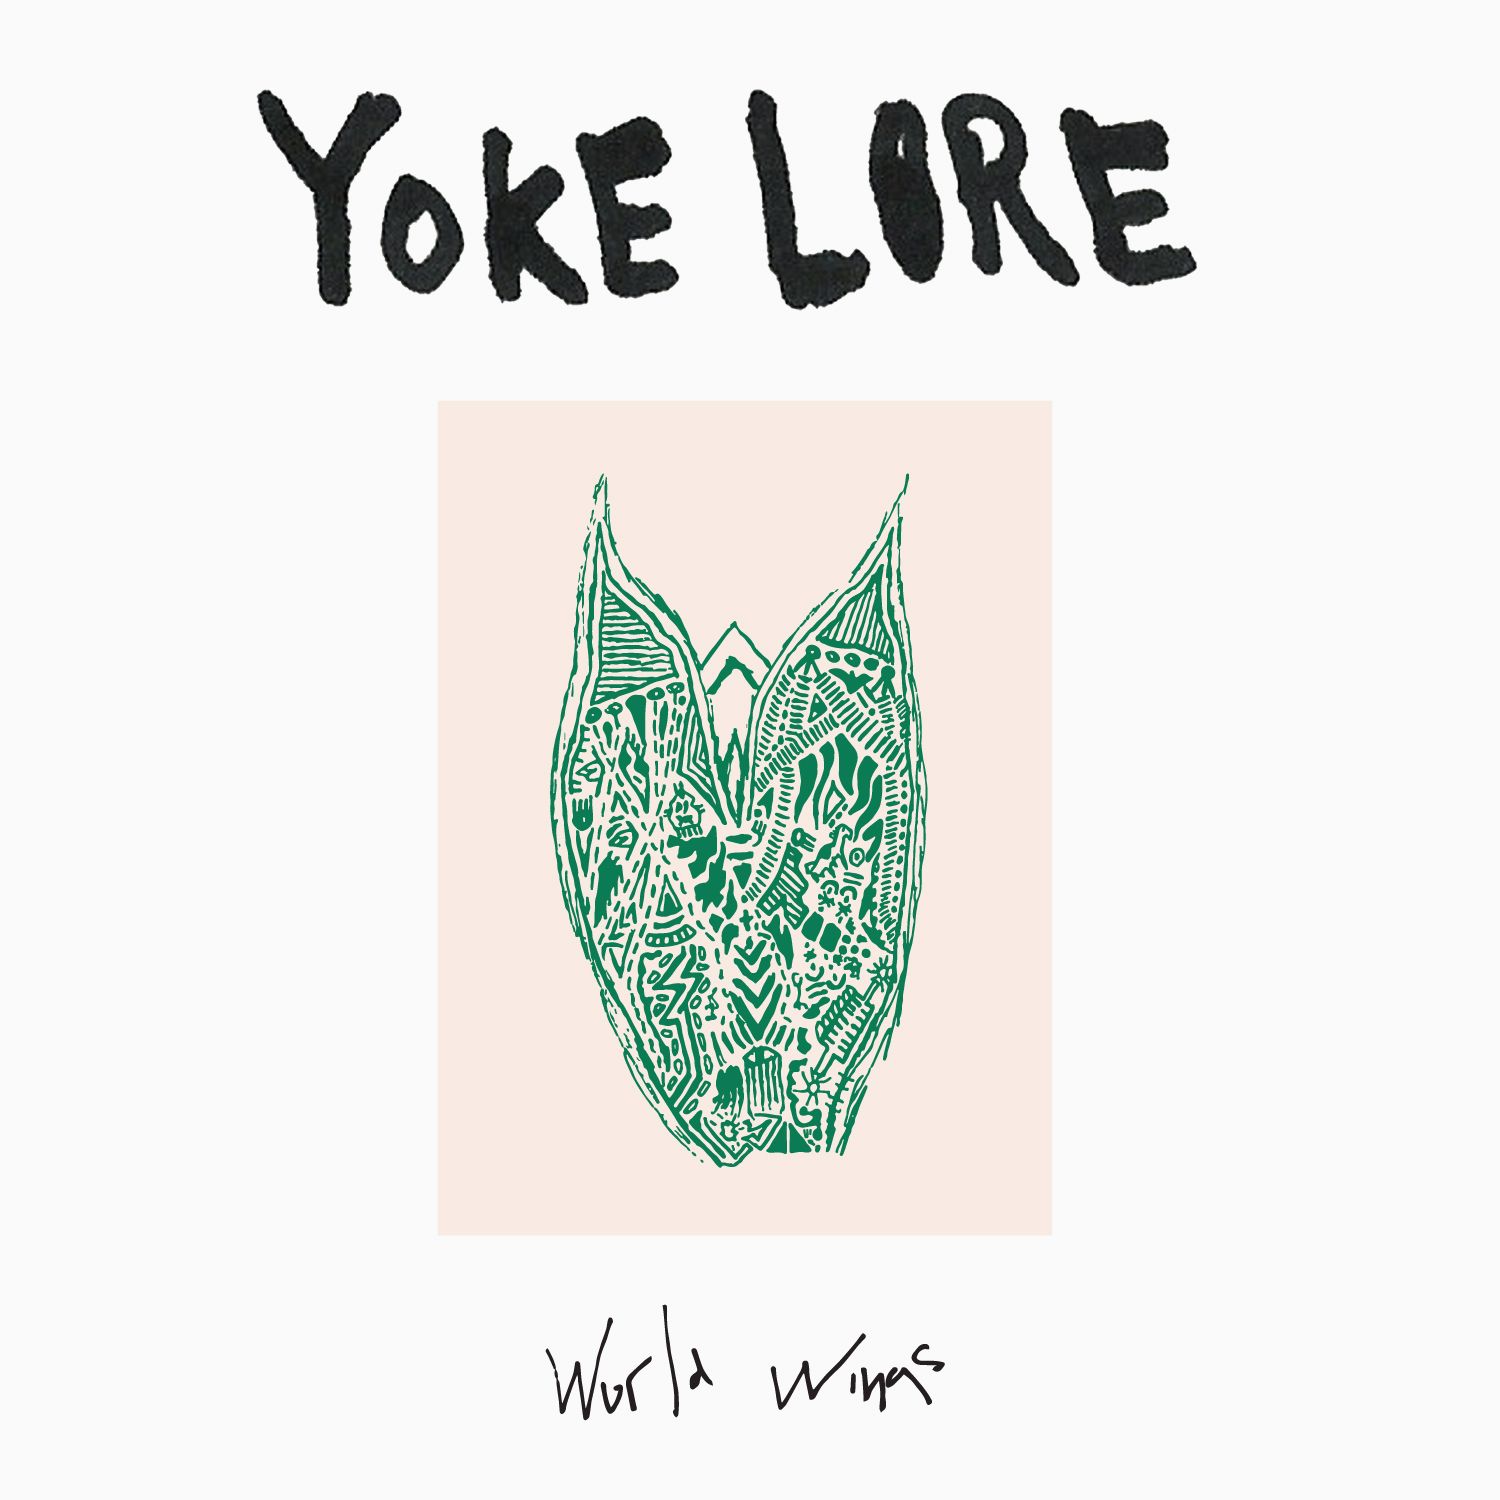 New: Yoke Lore – World Wings